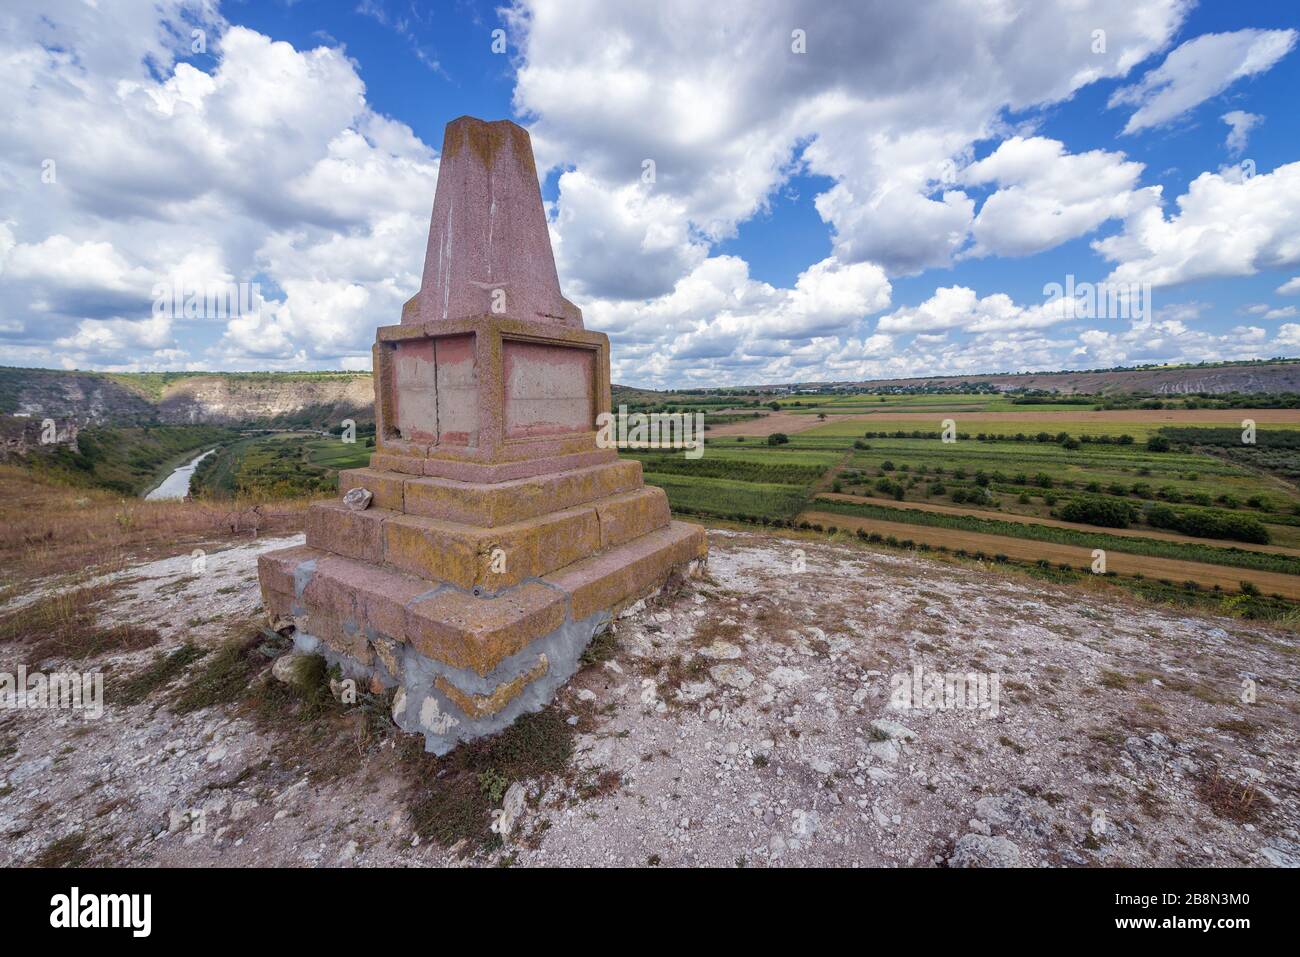 Ancien monument à Orheiul Vechi - ancien complexe historique et archéologique Orhei situé à Trebujeni sur la rivière Raut, en Moldavie Banque D'Images